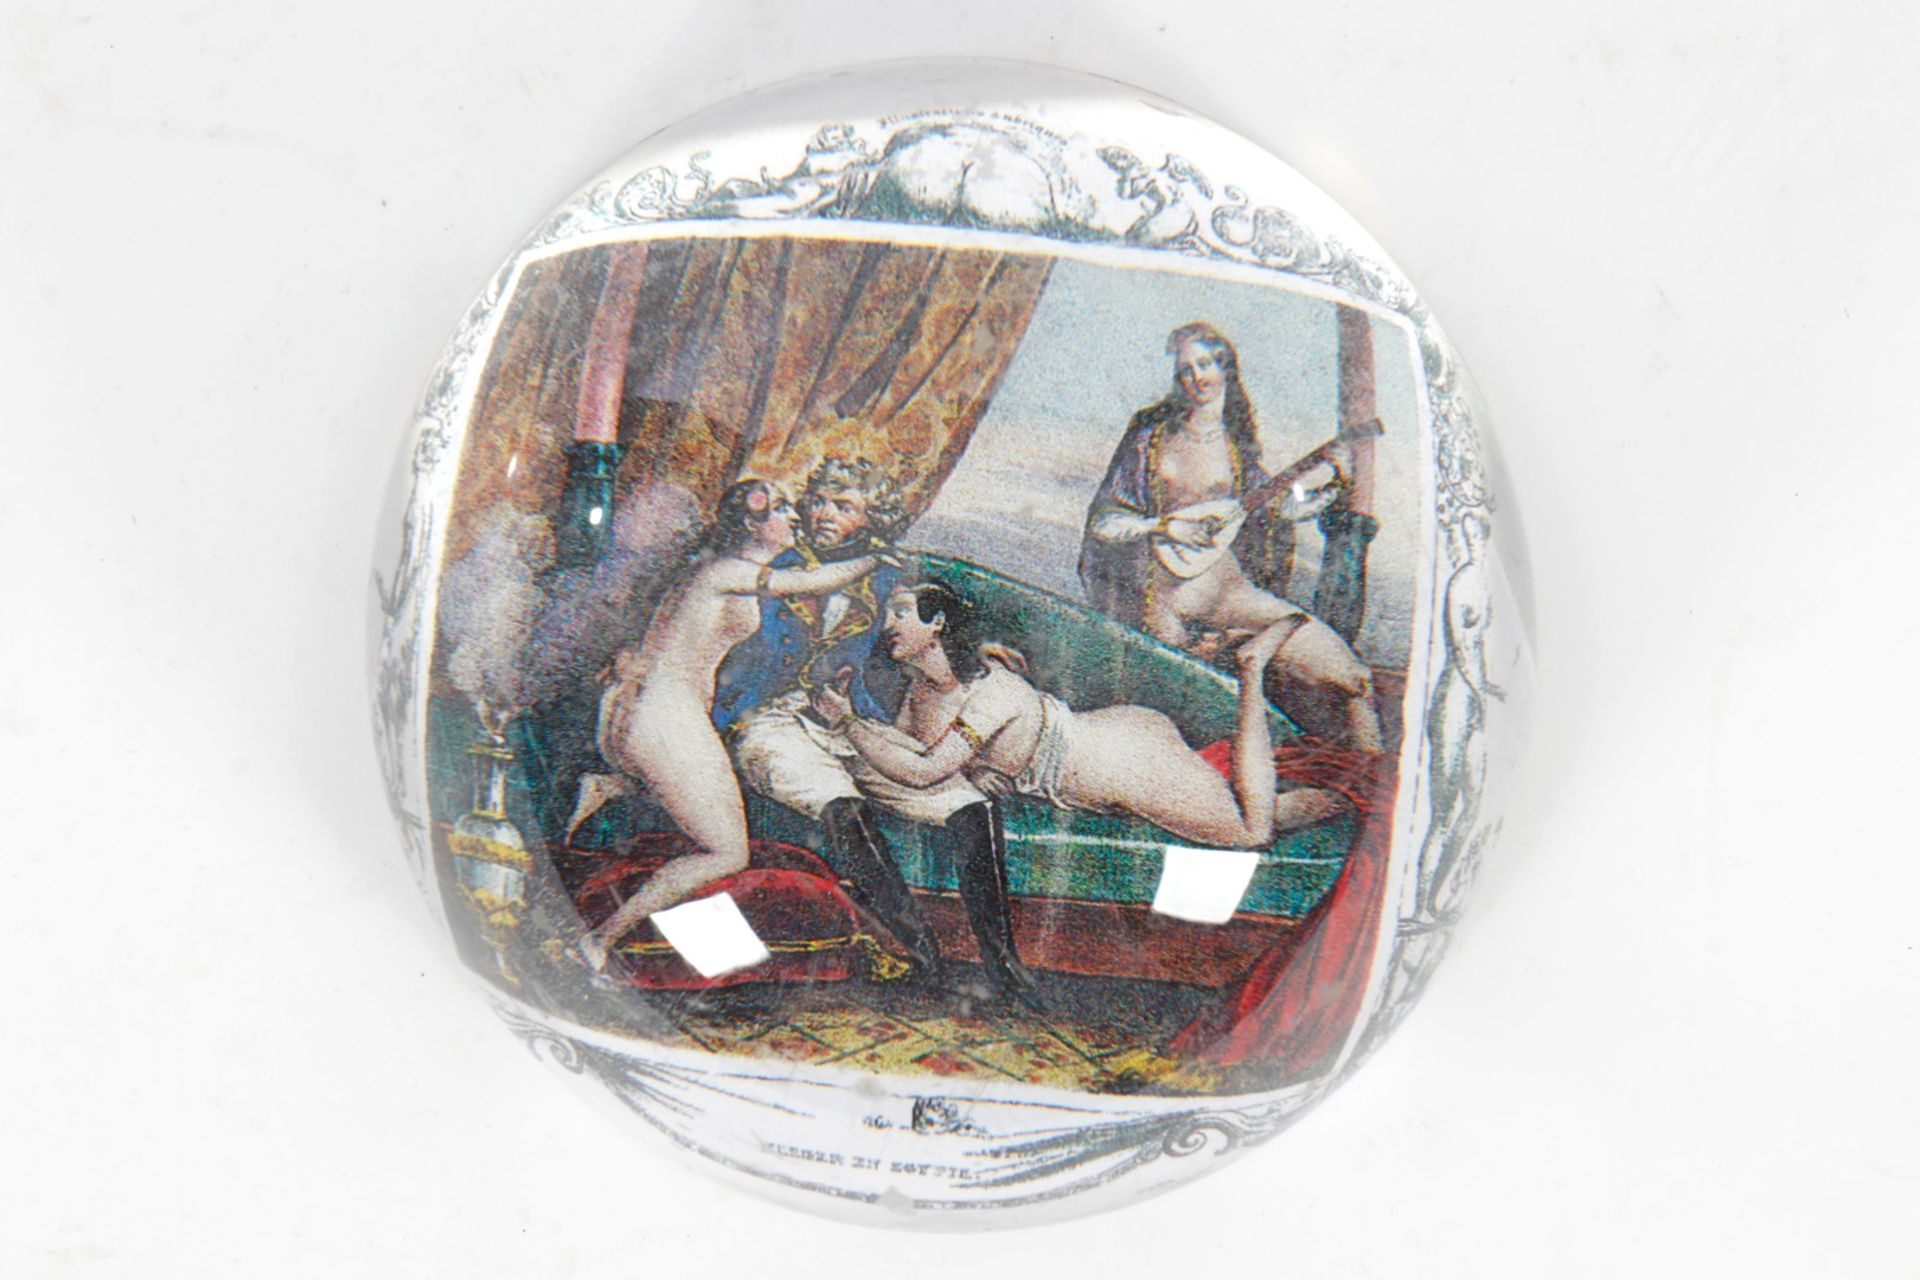 Halbglas als Briefbeschwerer, mit erotischem Motiv, Durchmesser 9